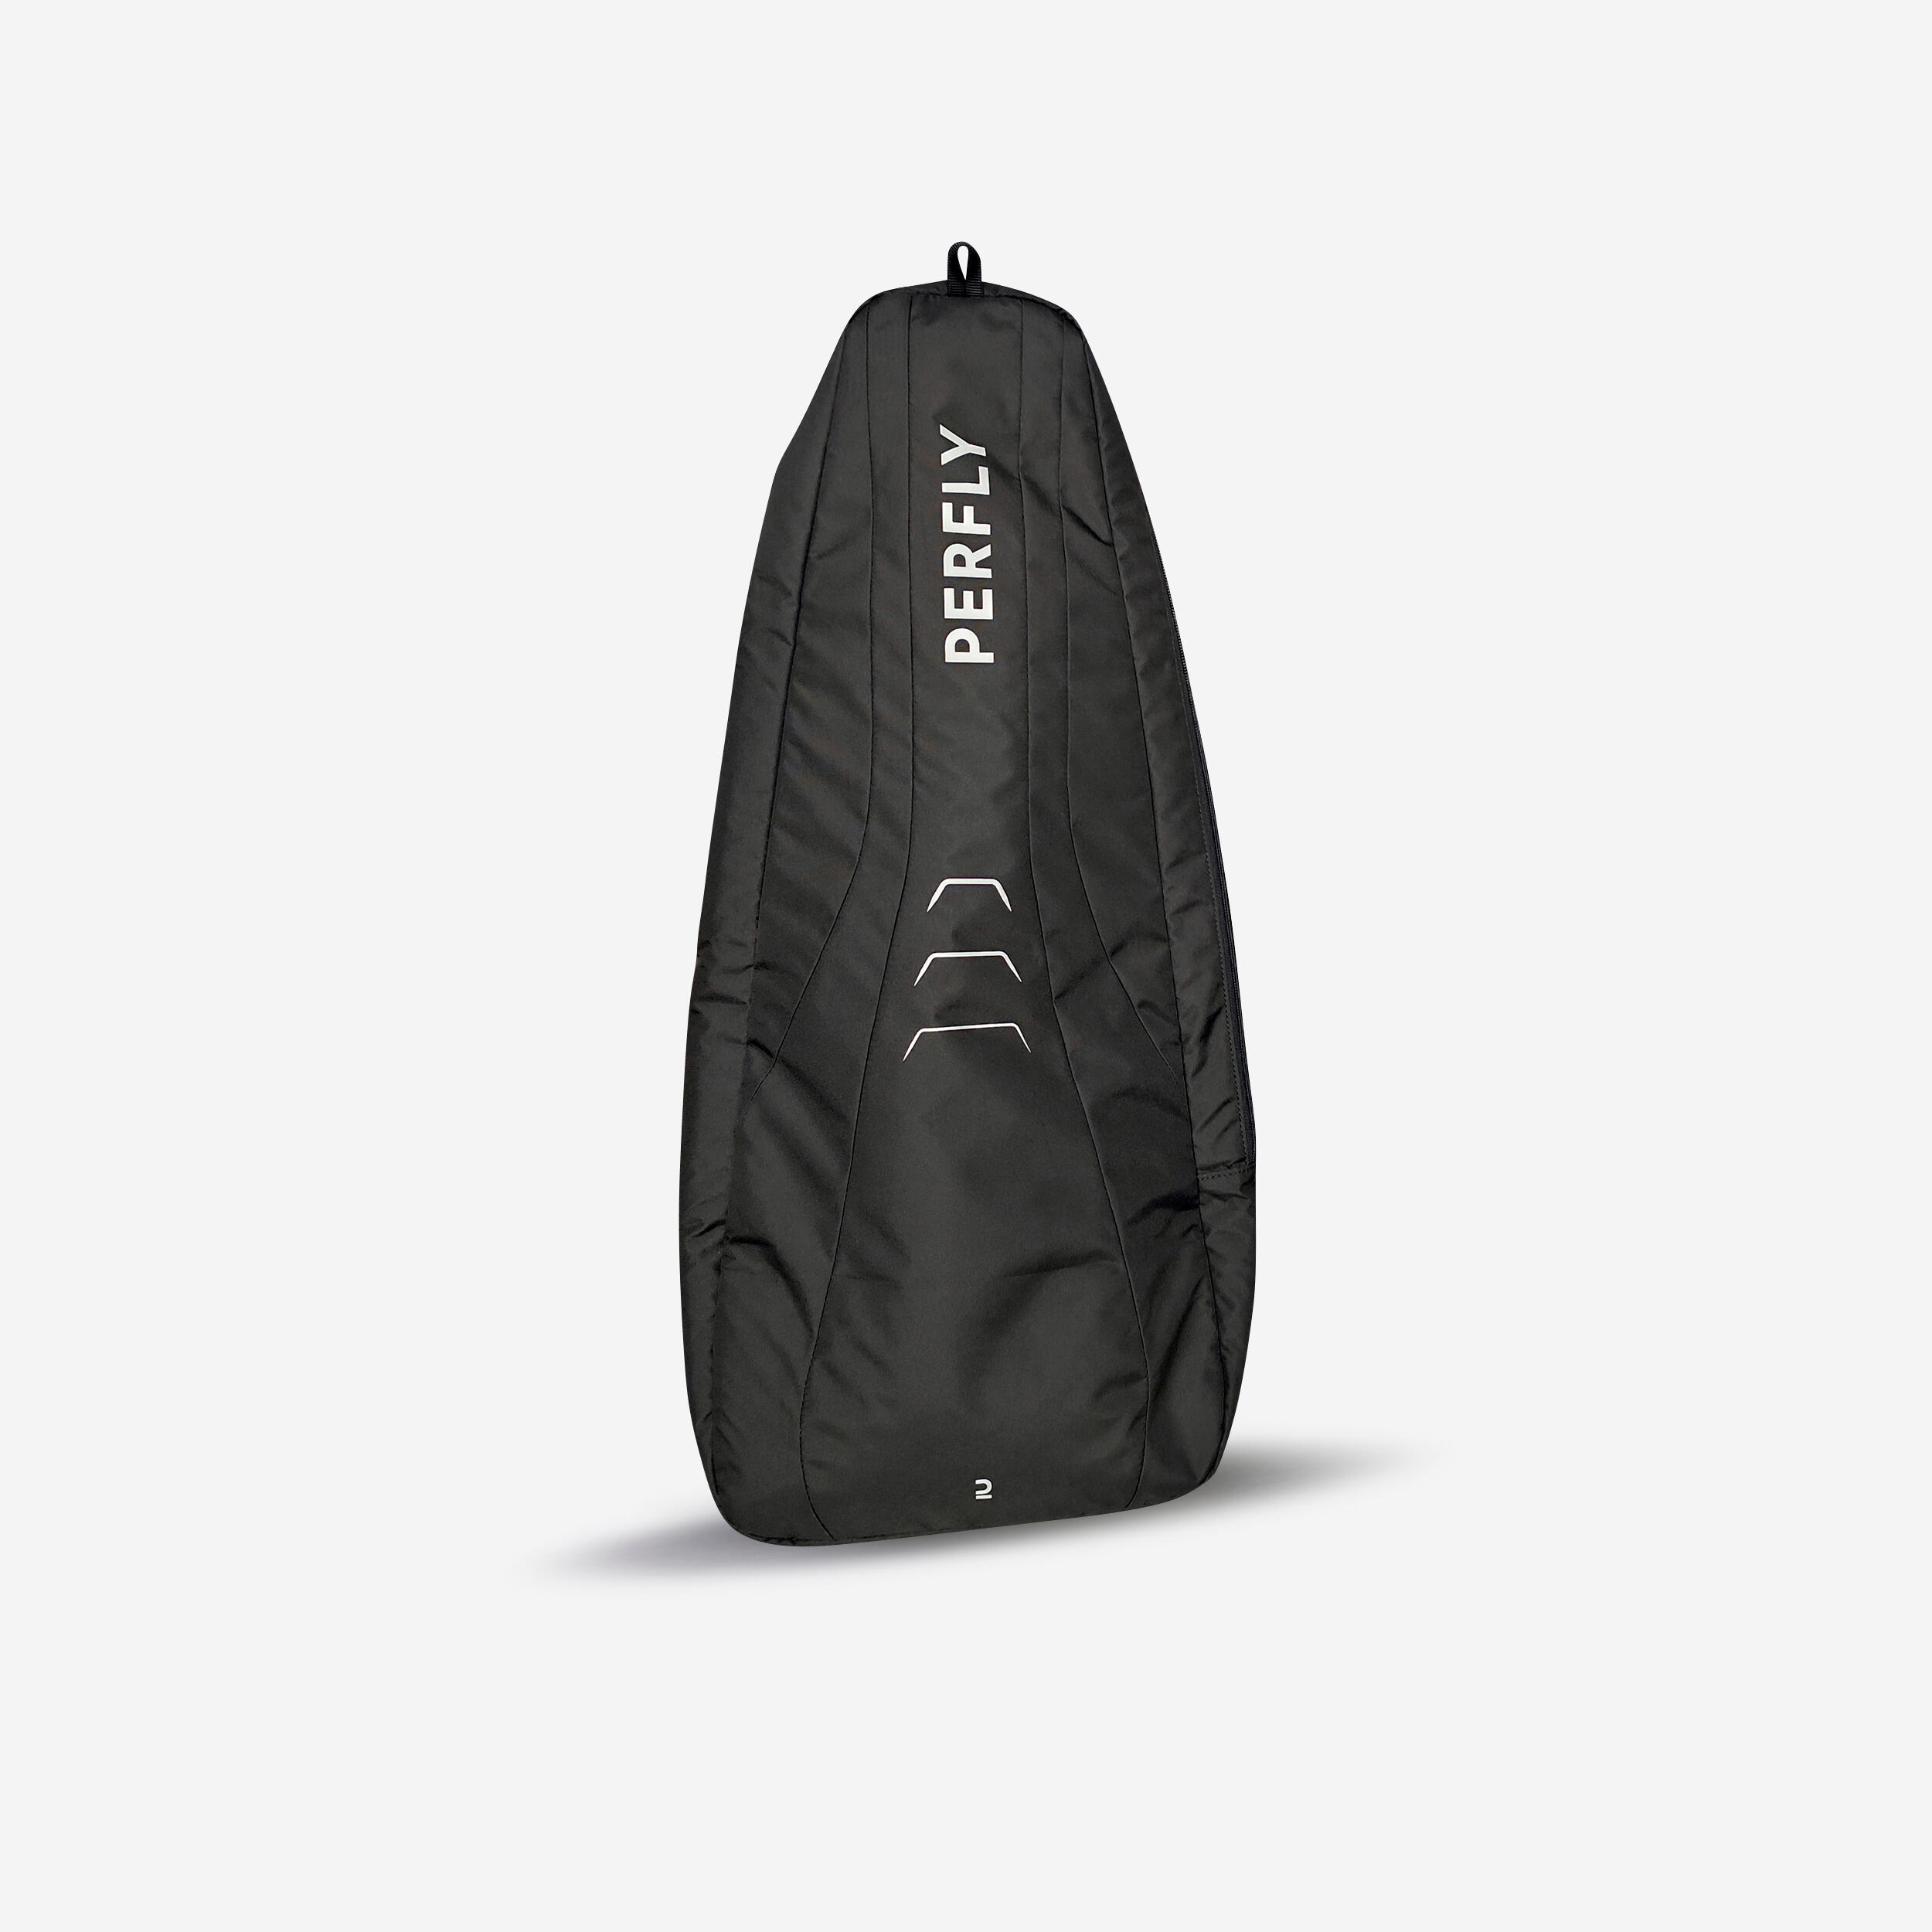 Ryggsäck För Squash Perfly Sl 100 Backpack 15 L